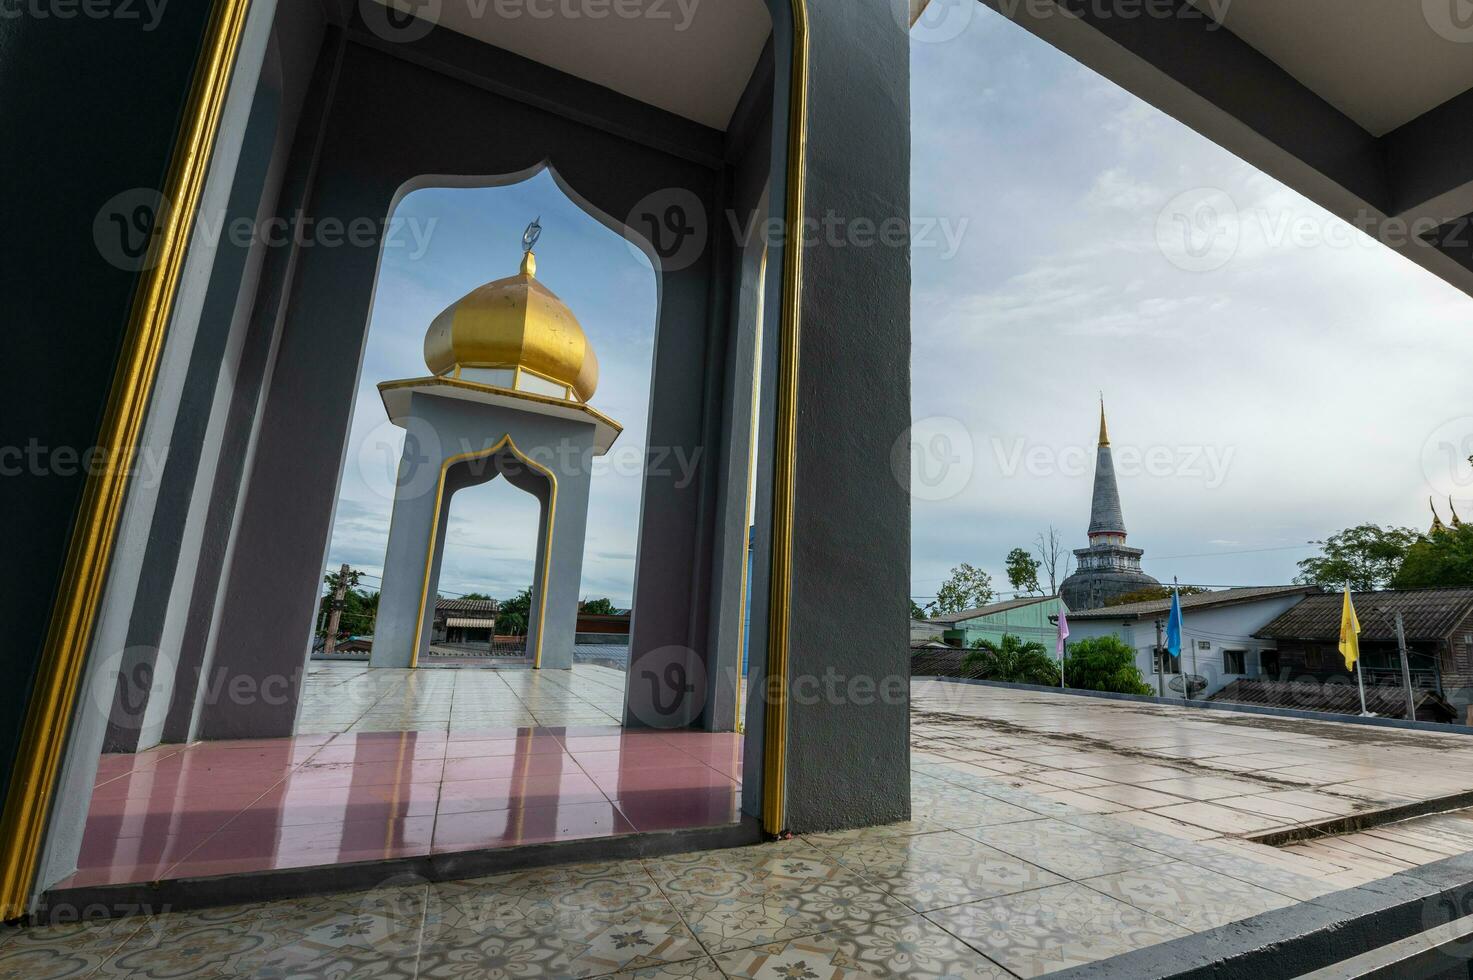 Kuppel von Moschee und Pagode von Tempel im Rahmen beim Nakhon si thammarat, Thailand foto